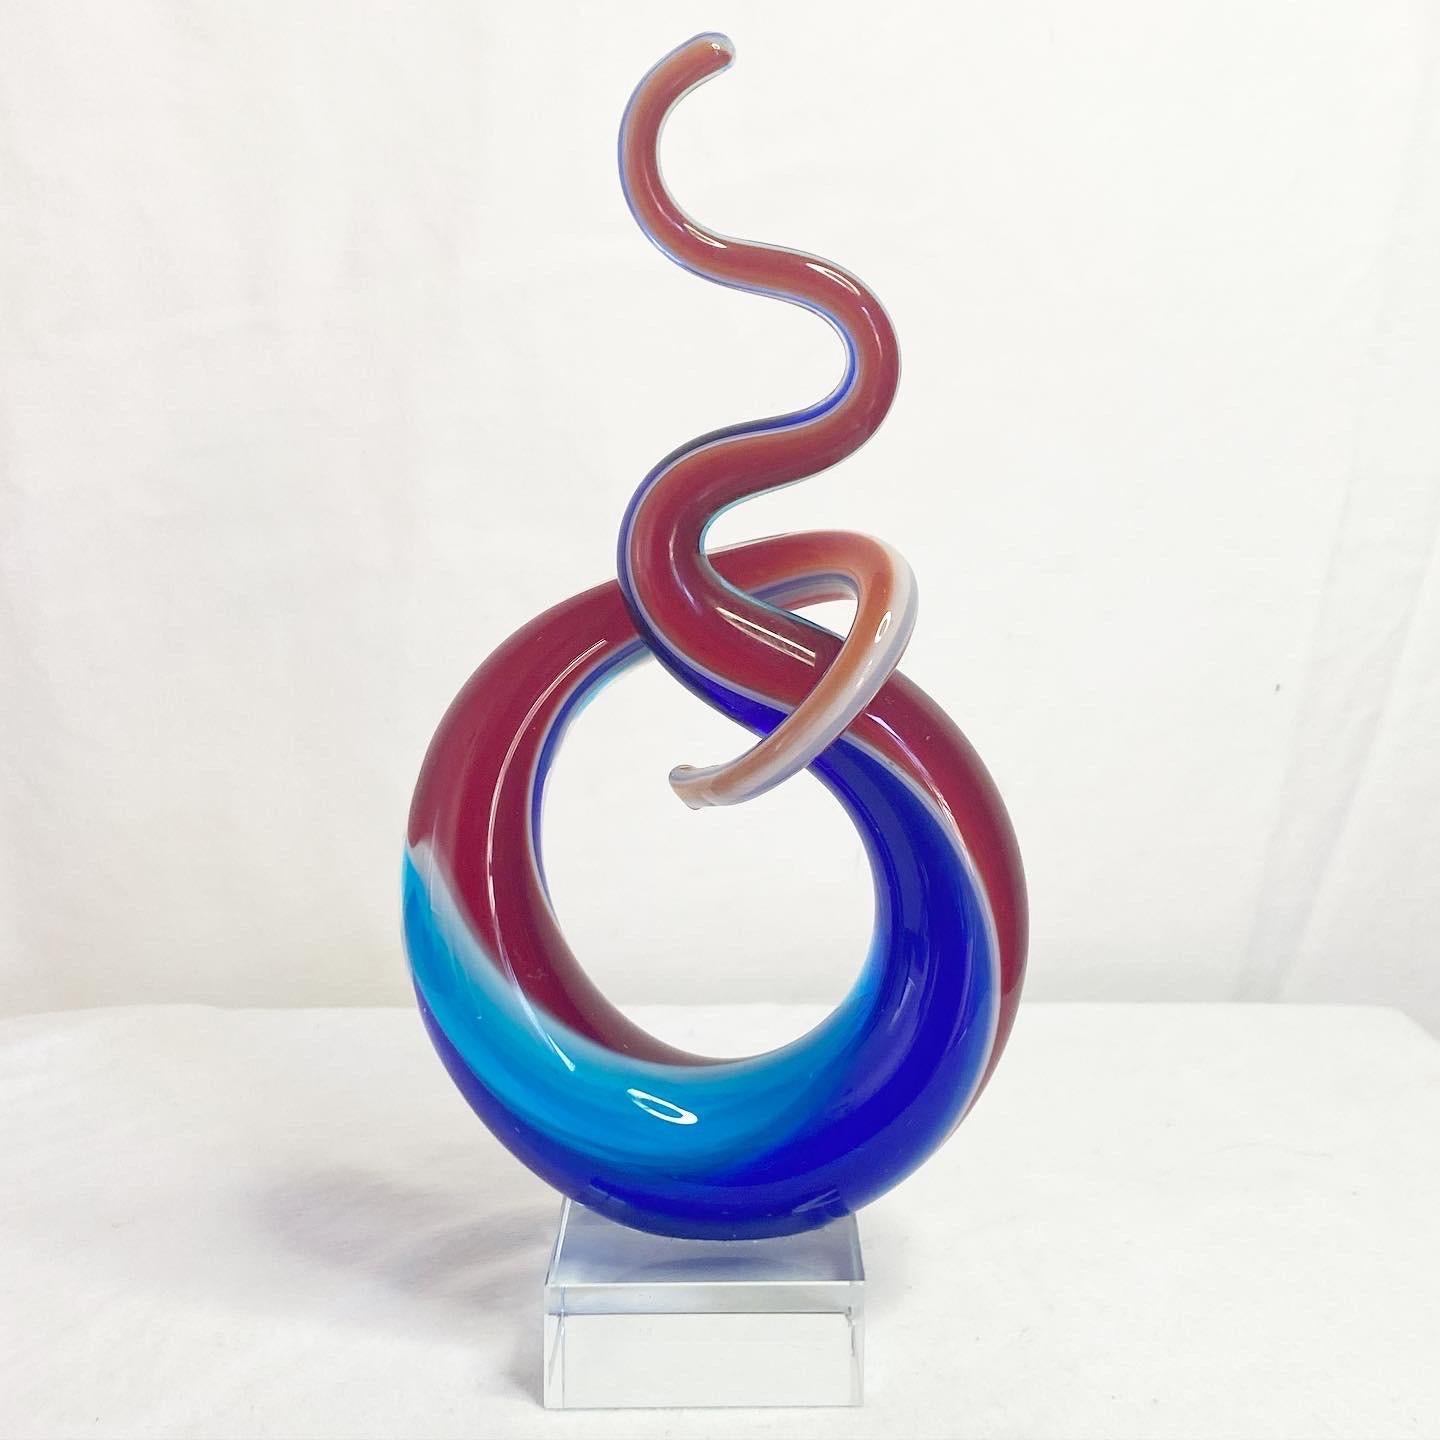  Exceptionnelle sculpture en verre postmoderne sur un vase en lucite. Un tourbillon rouge et bleu soufflé à la main.
